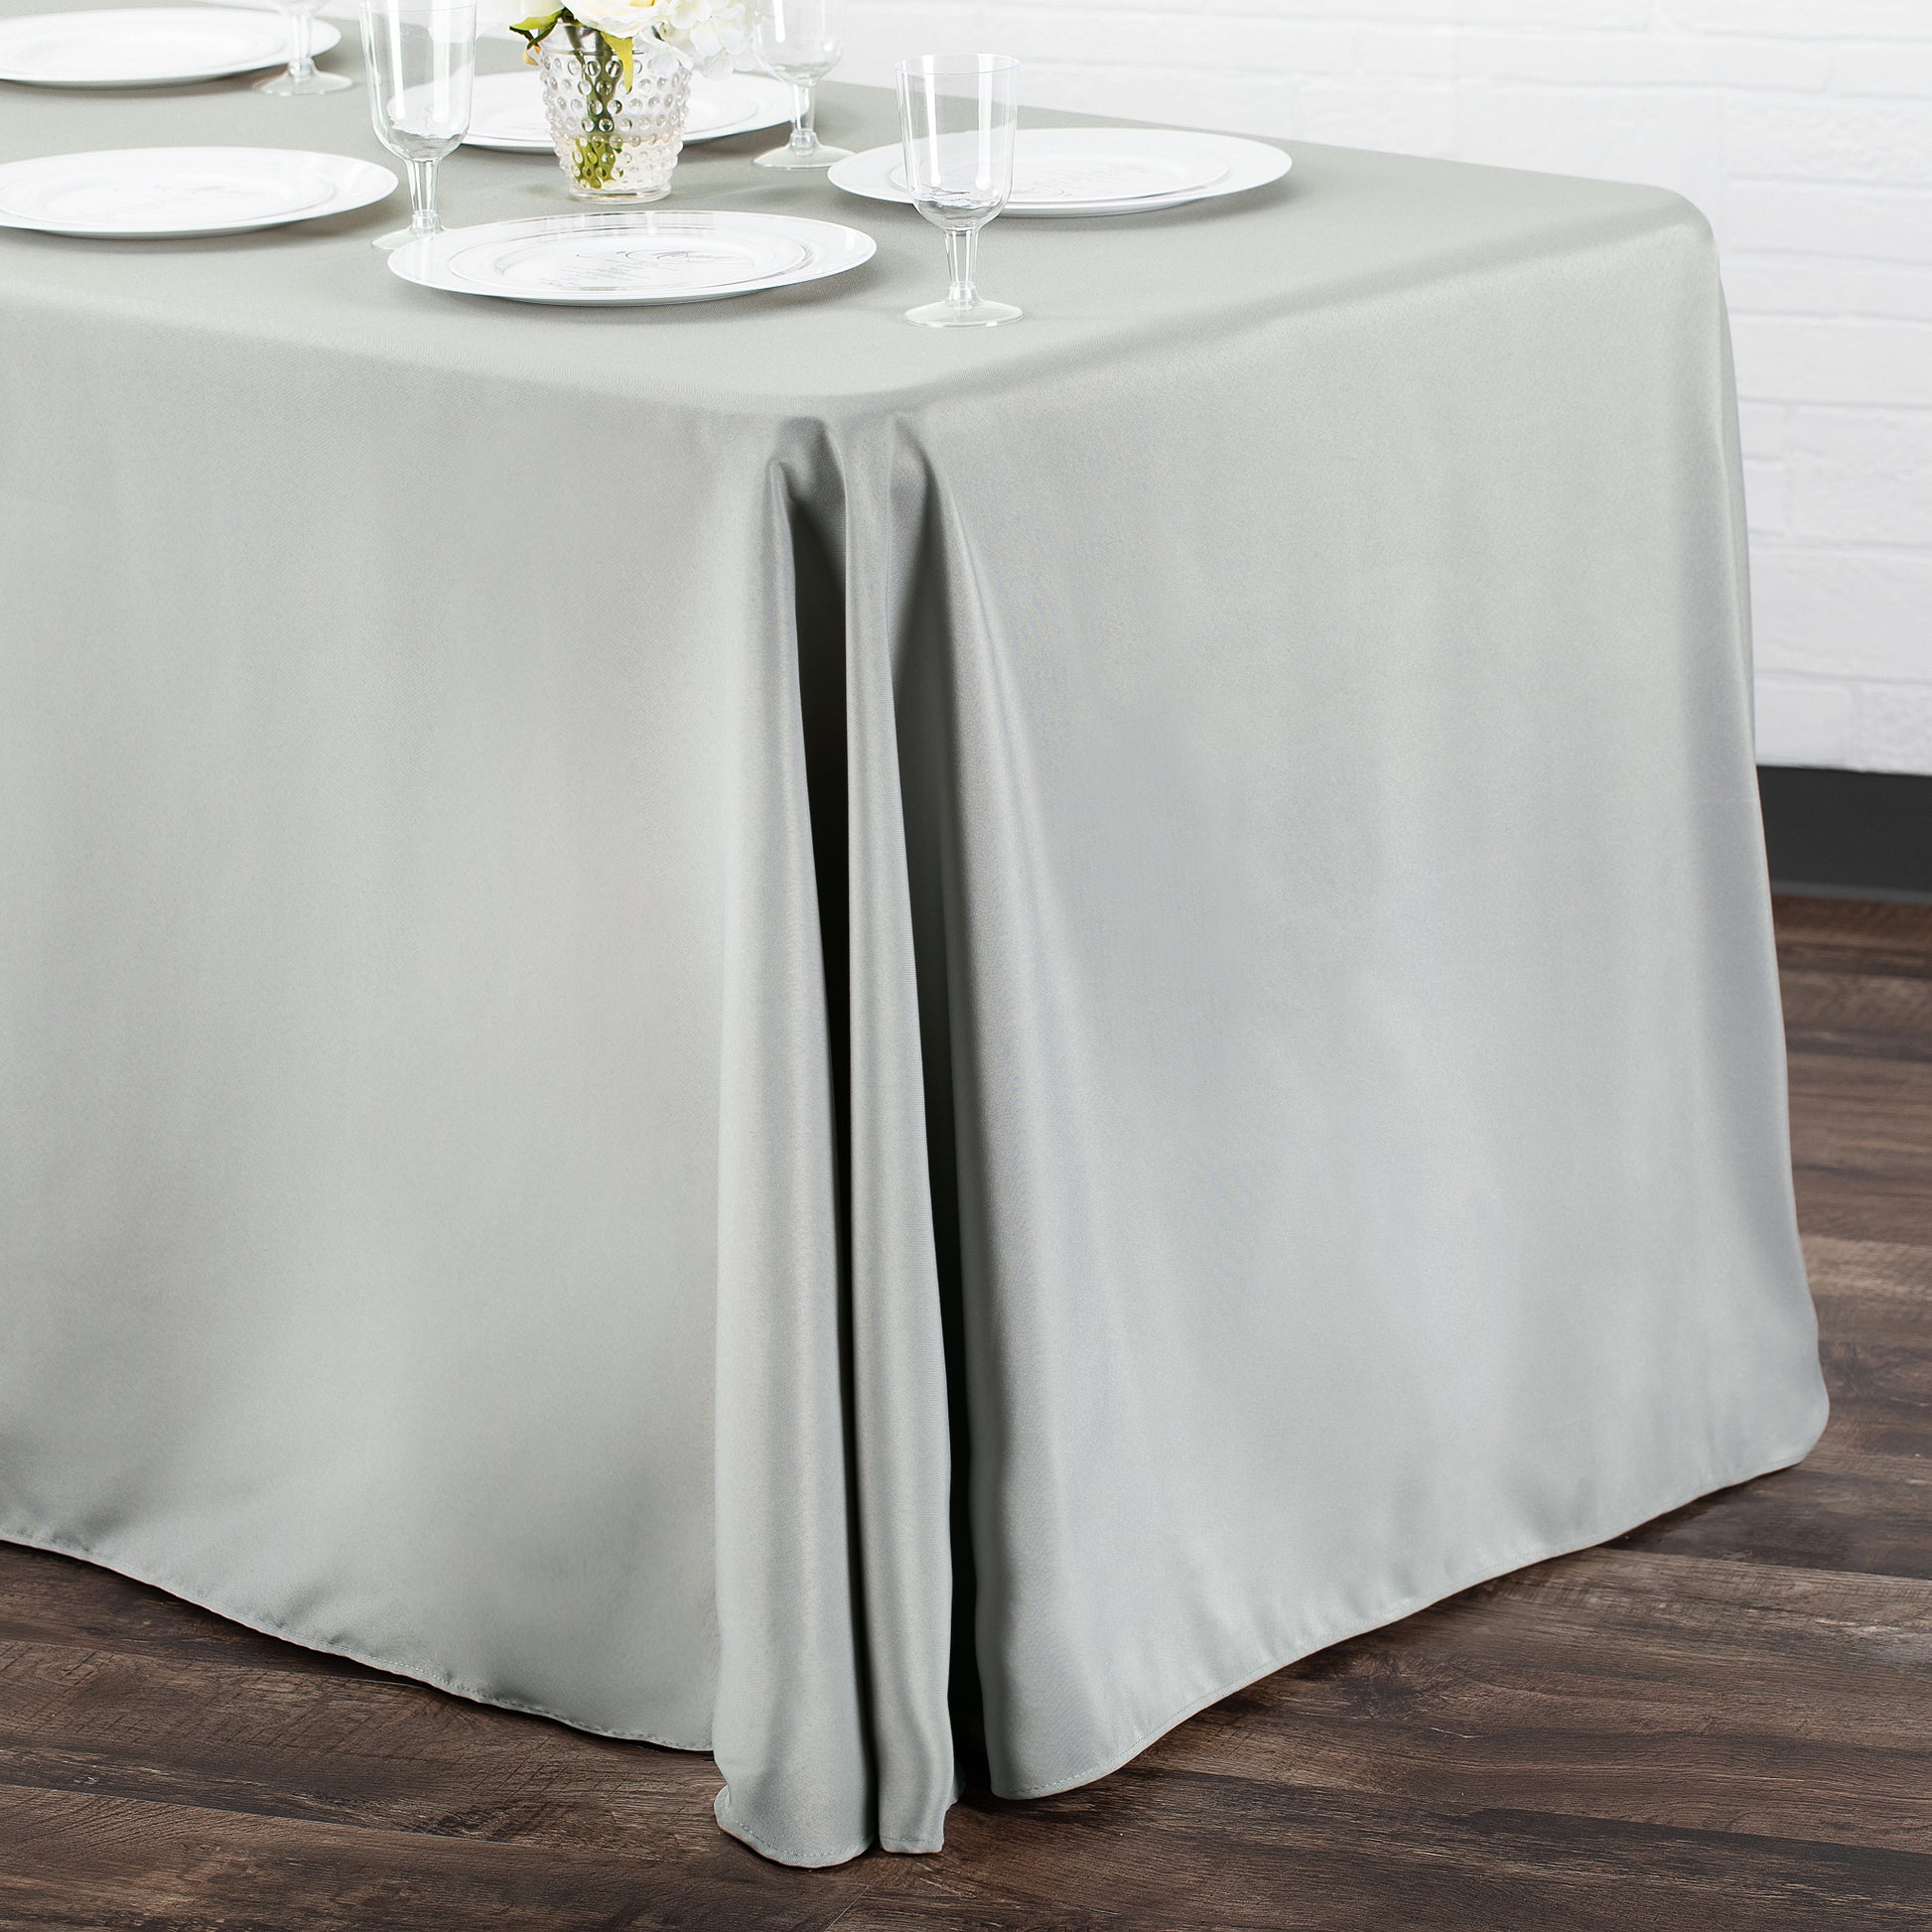 90"x132" Rectangular Oblong Polyester Tablecloth - Gray/Silver - CV Linens